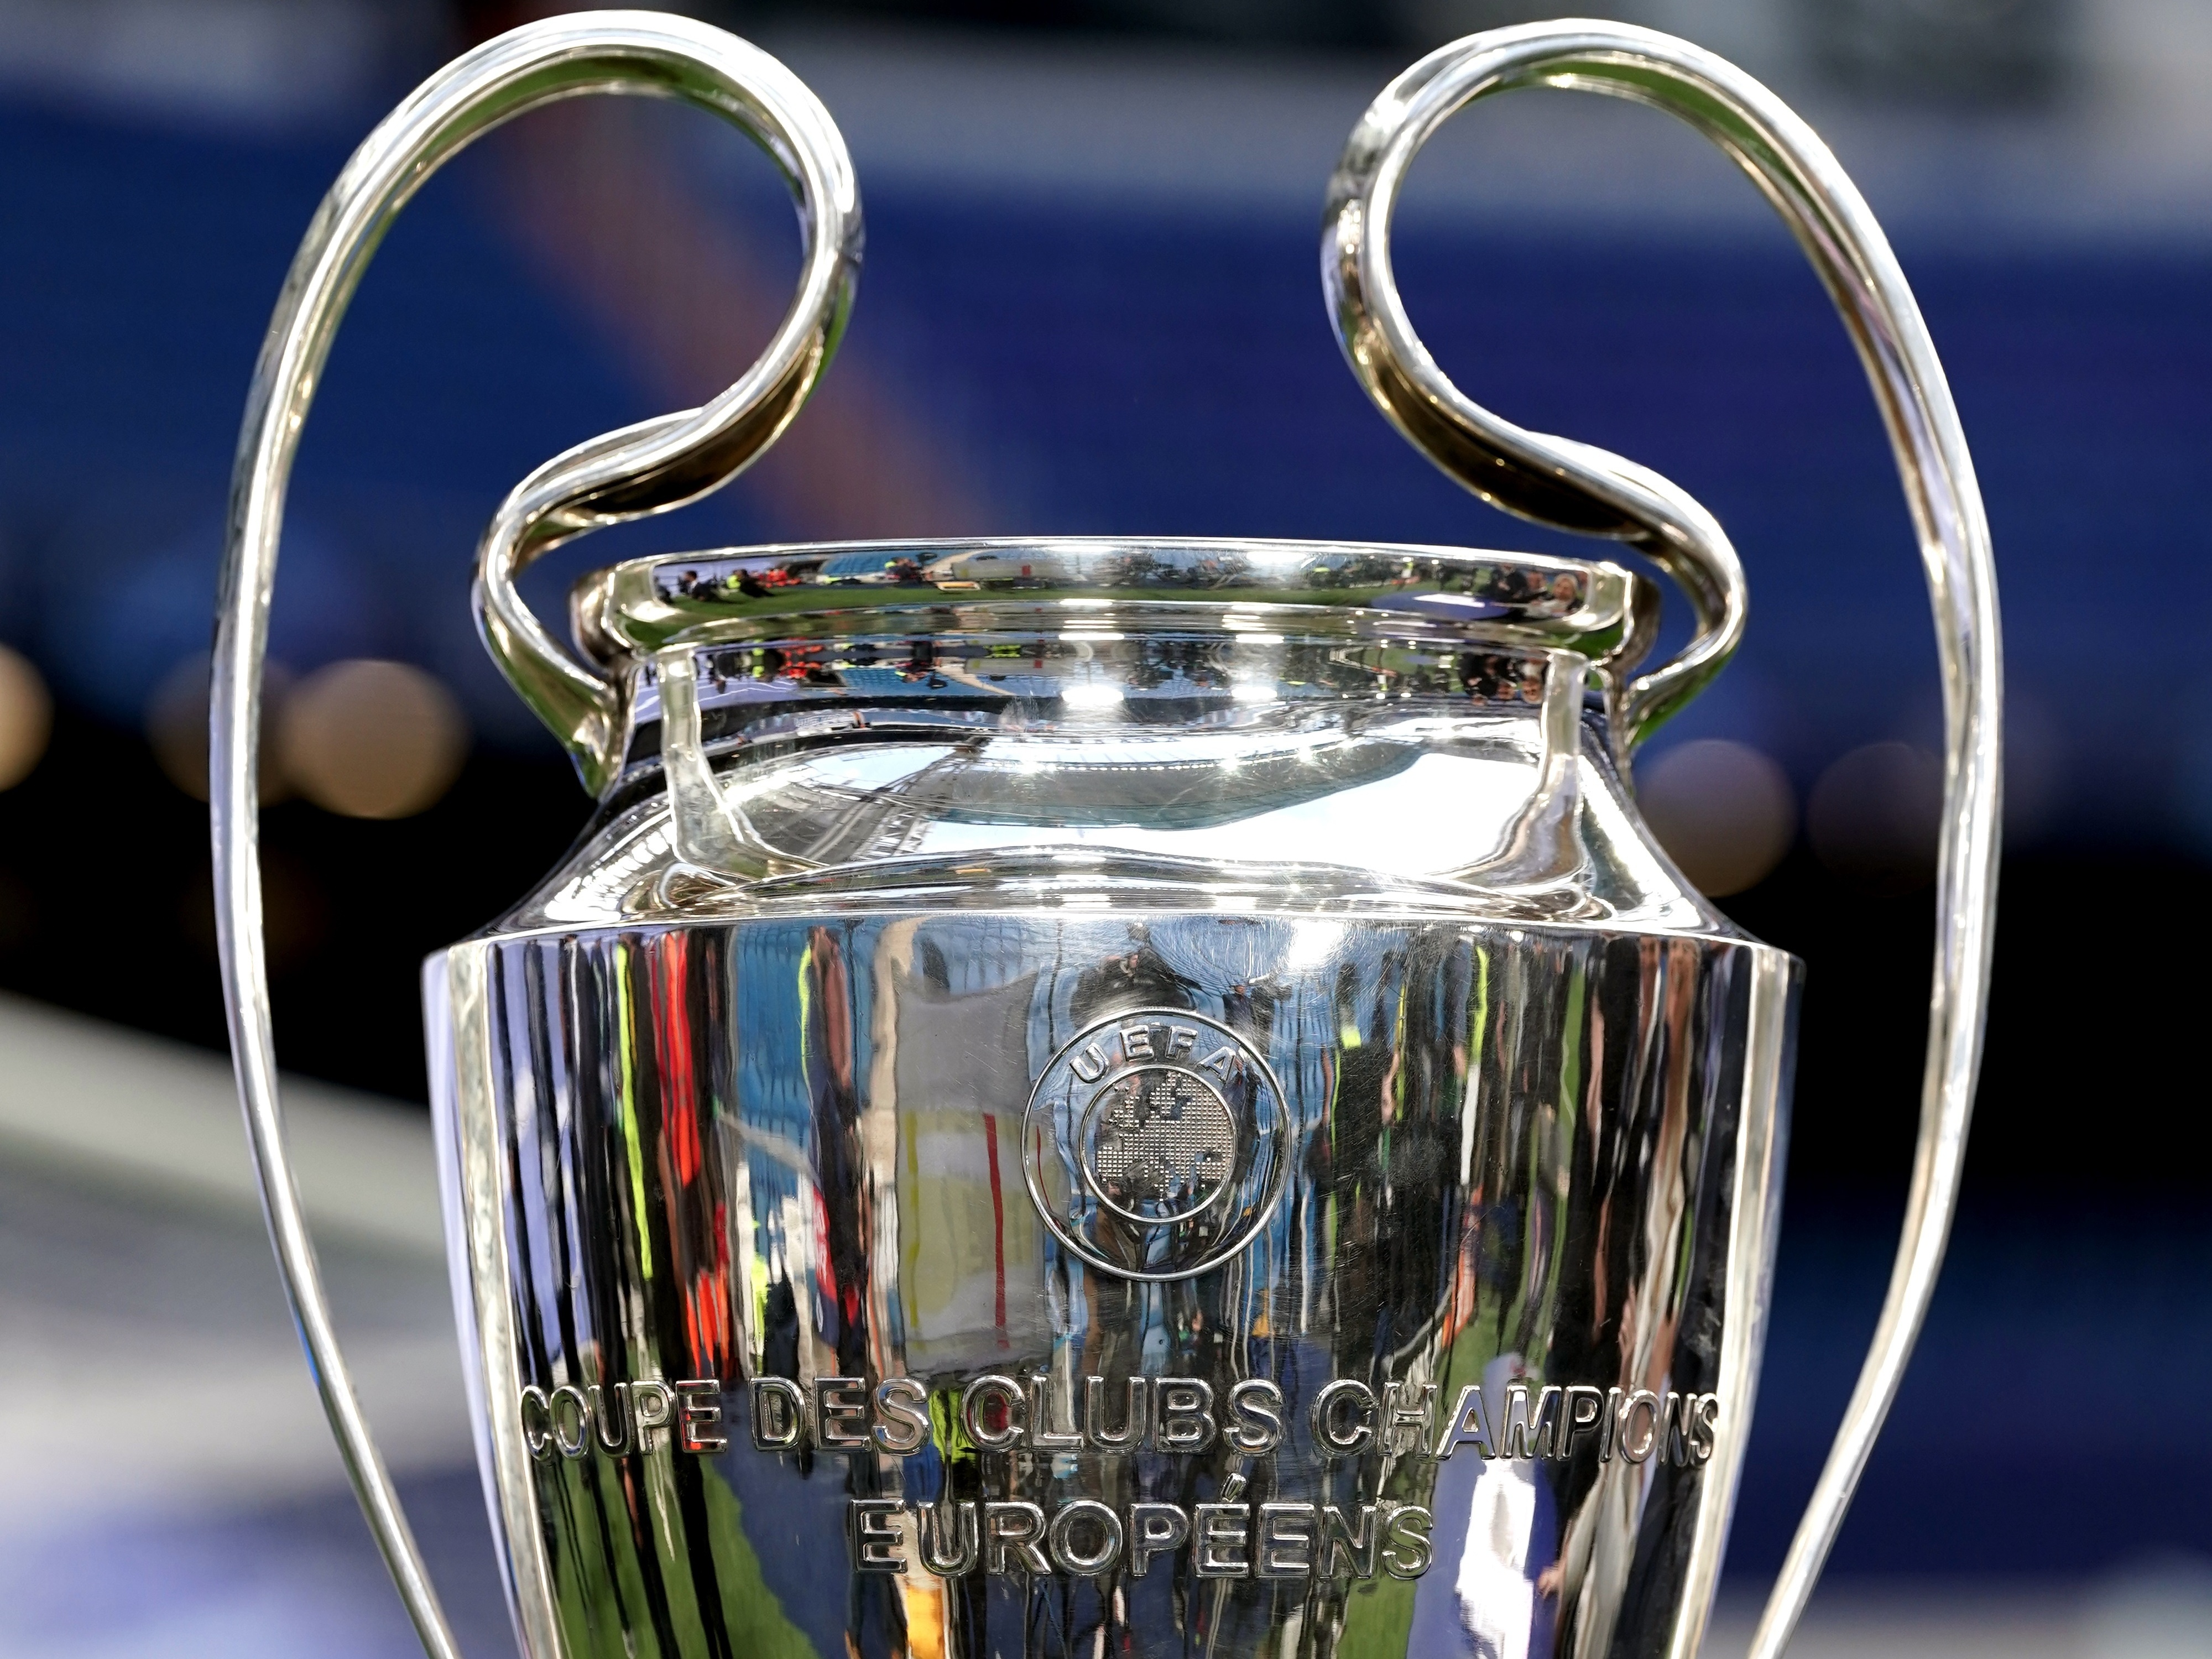 Champions League: entenda as mudanças na classificação para 2024